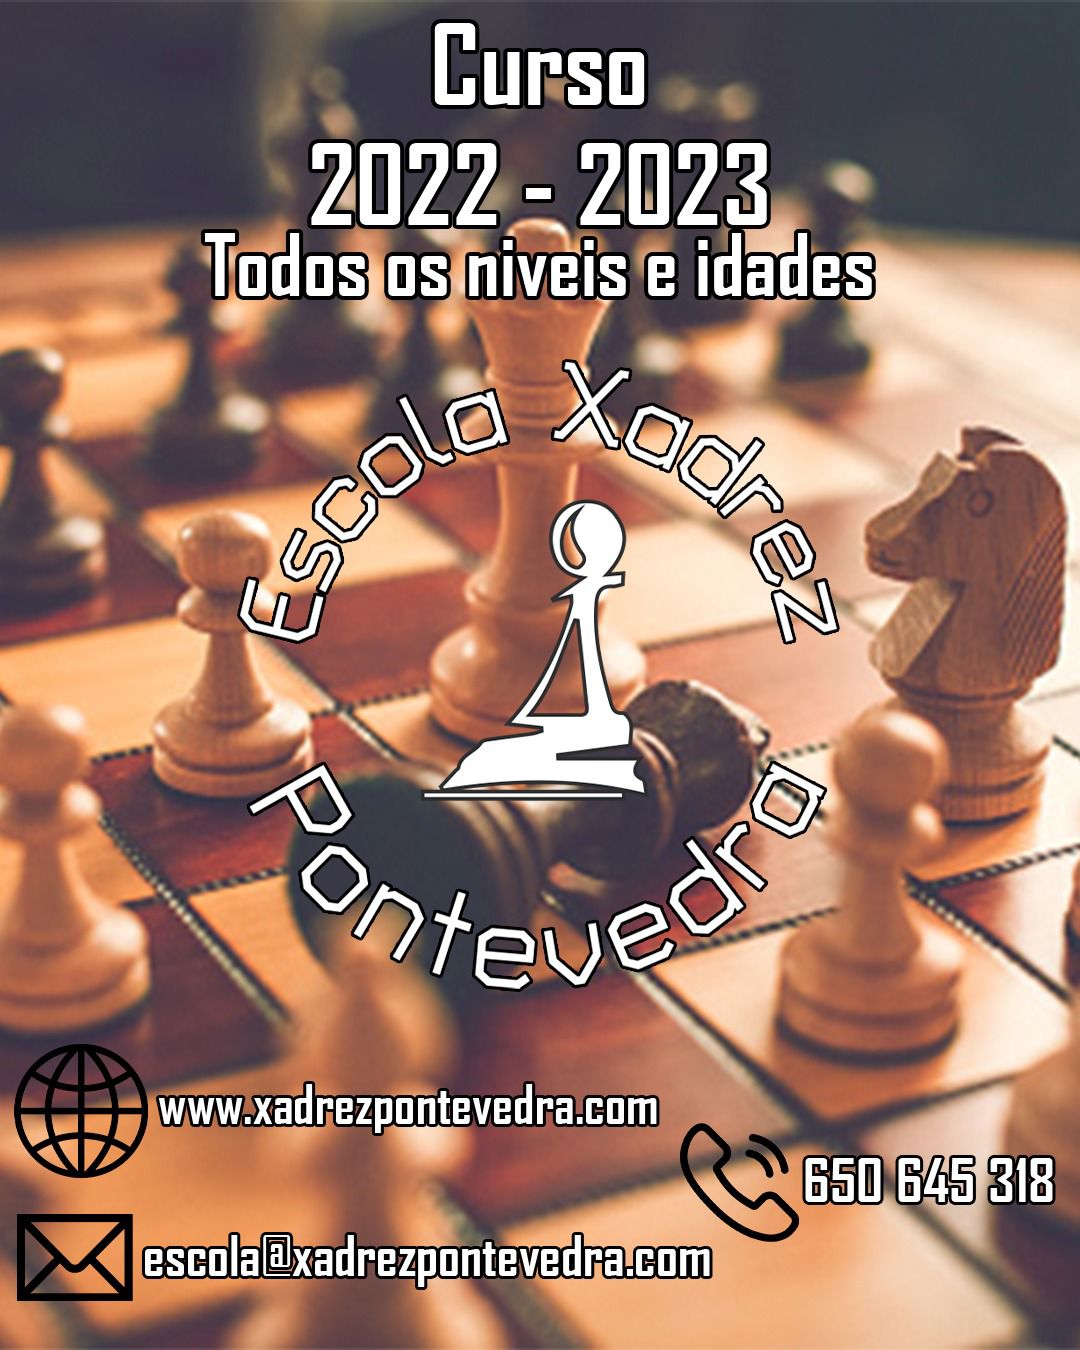 CURSO AJEDRECÍSTICO 2022/2023 de la EXP